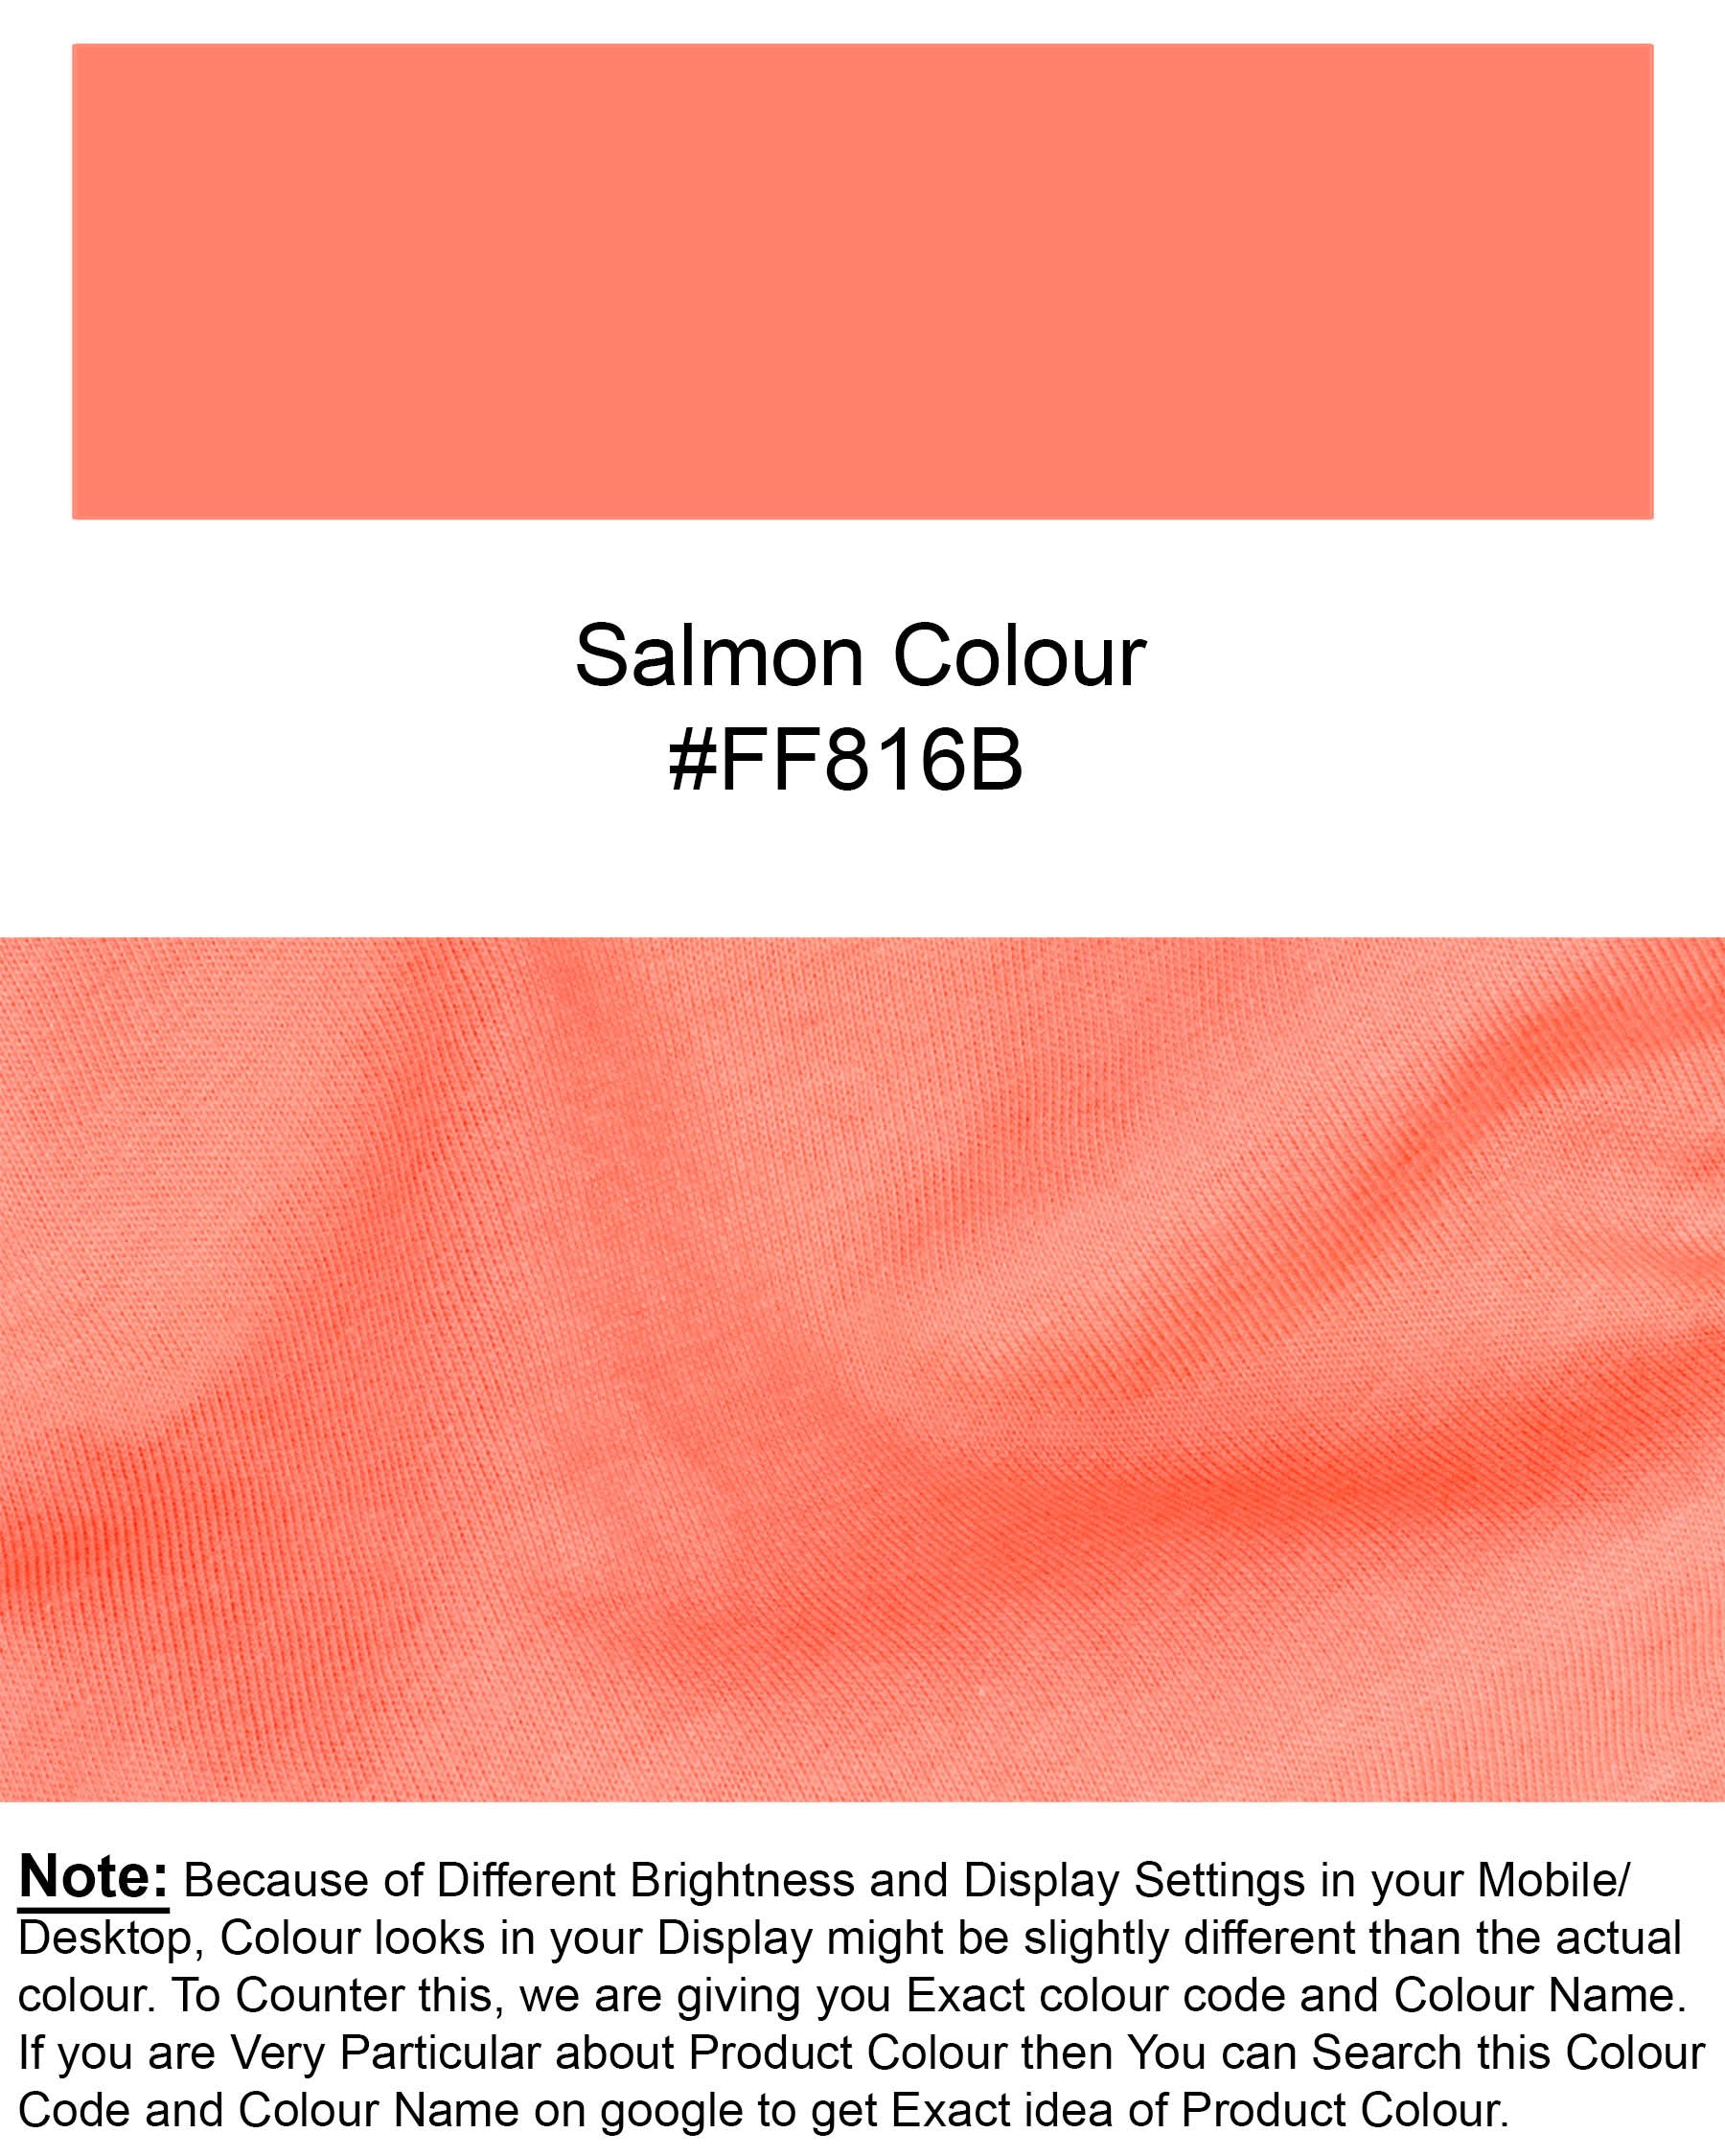 Salmon Full Sleeve Super Soft Premium Cotton Sweatshirt TS494-S, TS494-M, TS494-L, TS494-XL, TS494-XXL